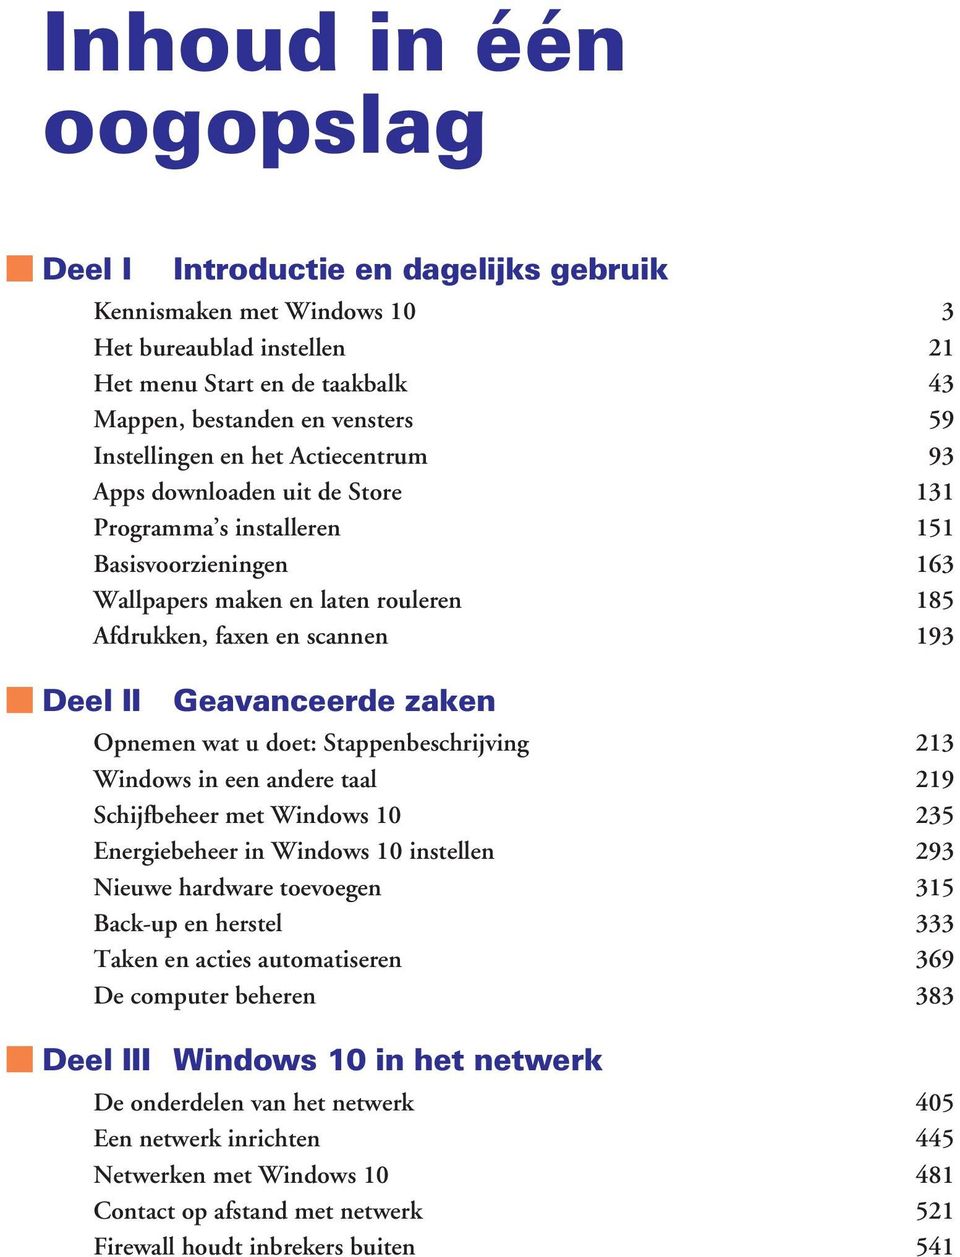 zaken Opnemen wat u doet: Stappenbeschrijving 213 Windows in een andere taal 219 Schijfbeheer met Windows 10 235 Energiebeheer in Windows 10 instellen 293 Nieuwe hardware toevoegen 315 Back-up en